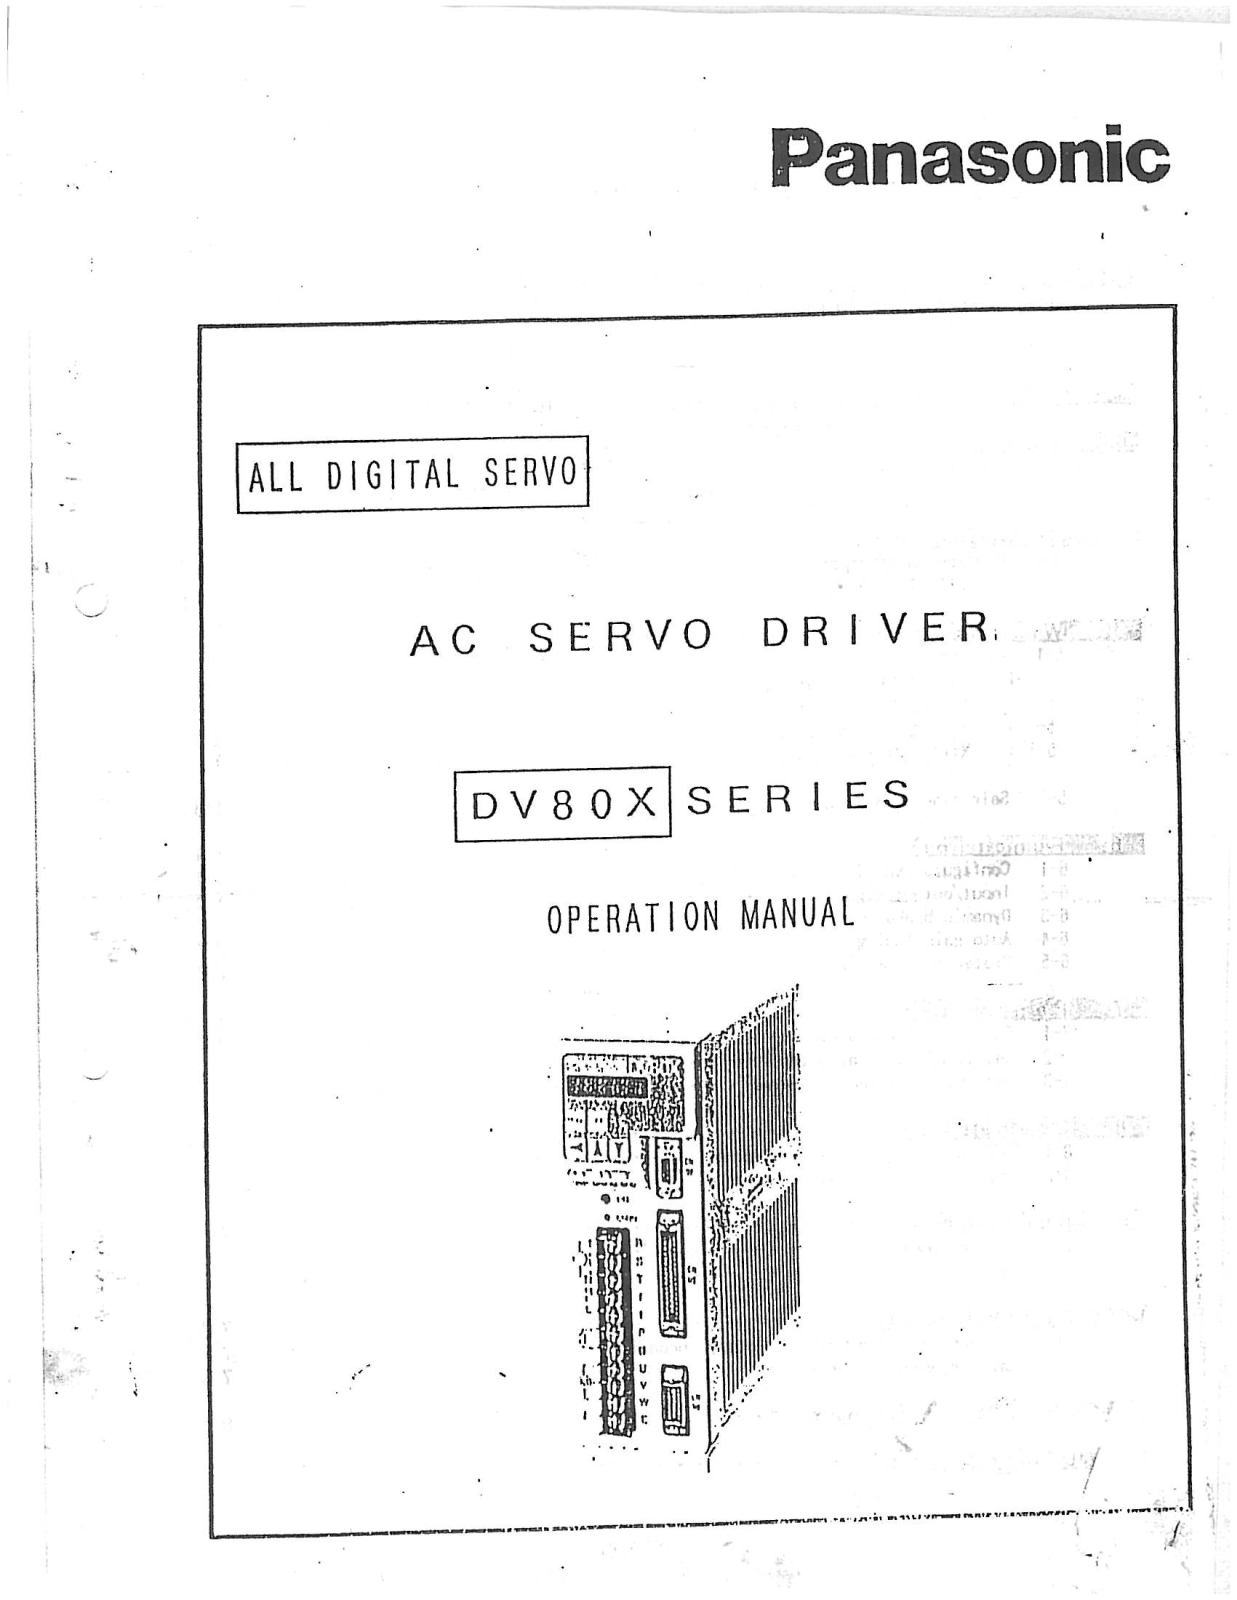 Panasonic DV80X User Manual